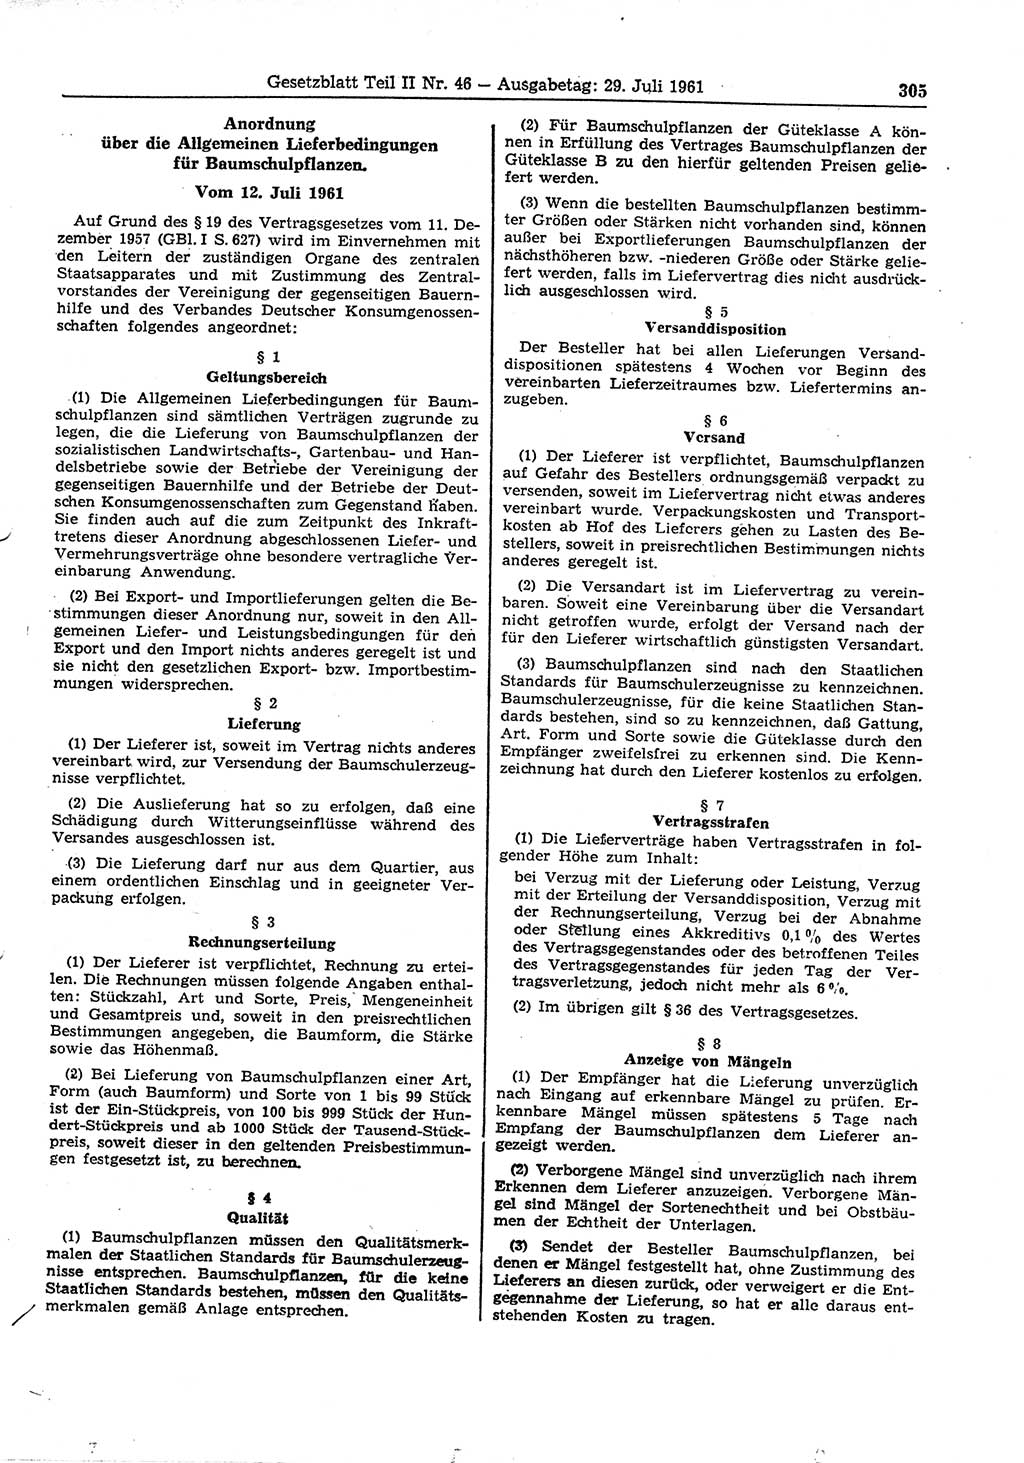 Gesetzblatt (GBl.) der Deutschen Demokratischen Republik (DDR) Teil ⅠⅠ 1961, Seite 305 (GBl. DDR ⅠⅠ 1961, S. 305)